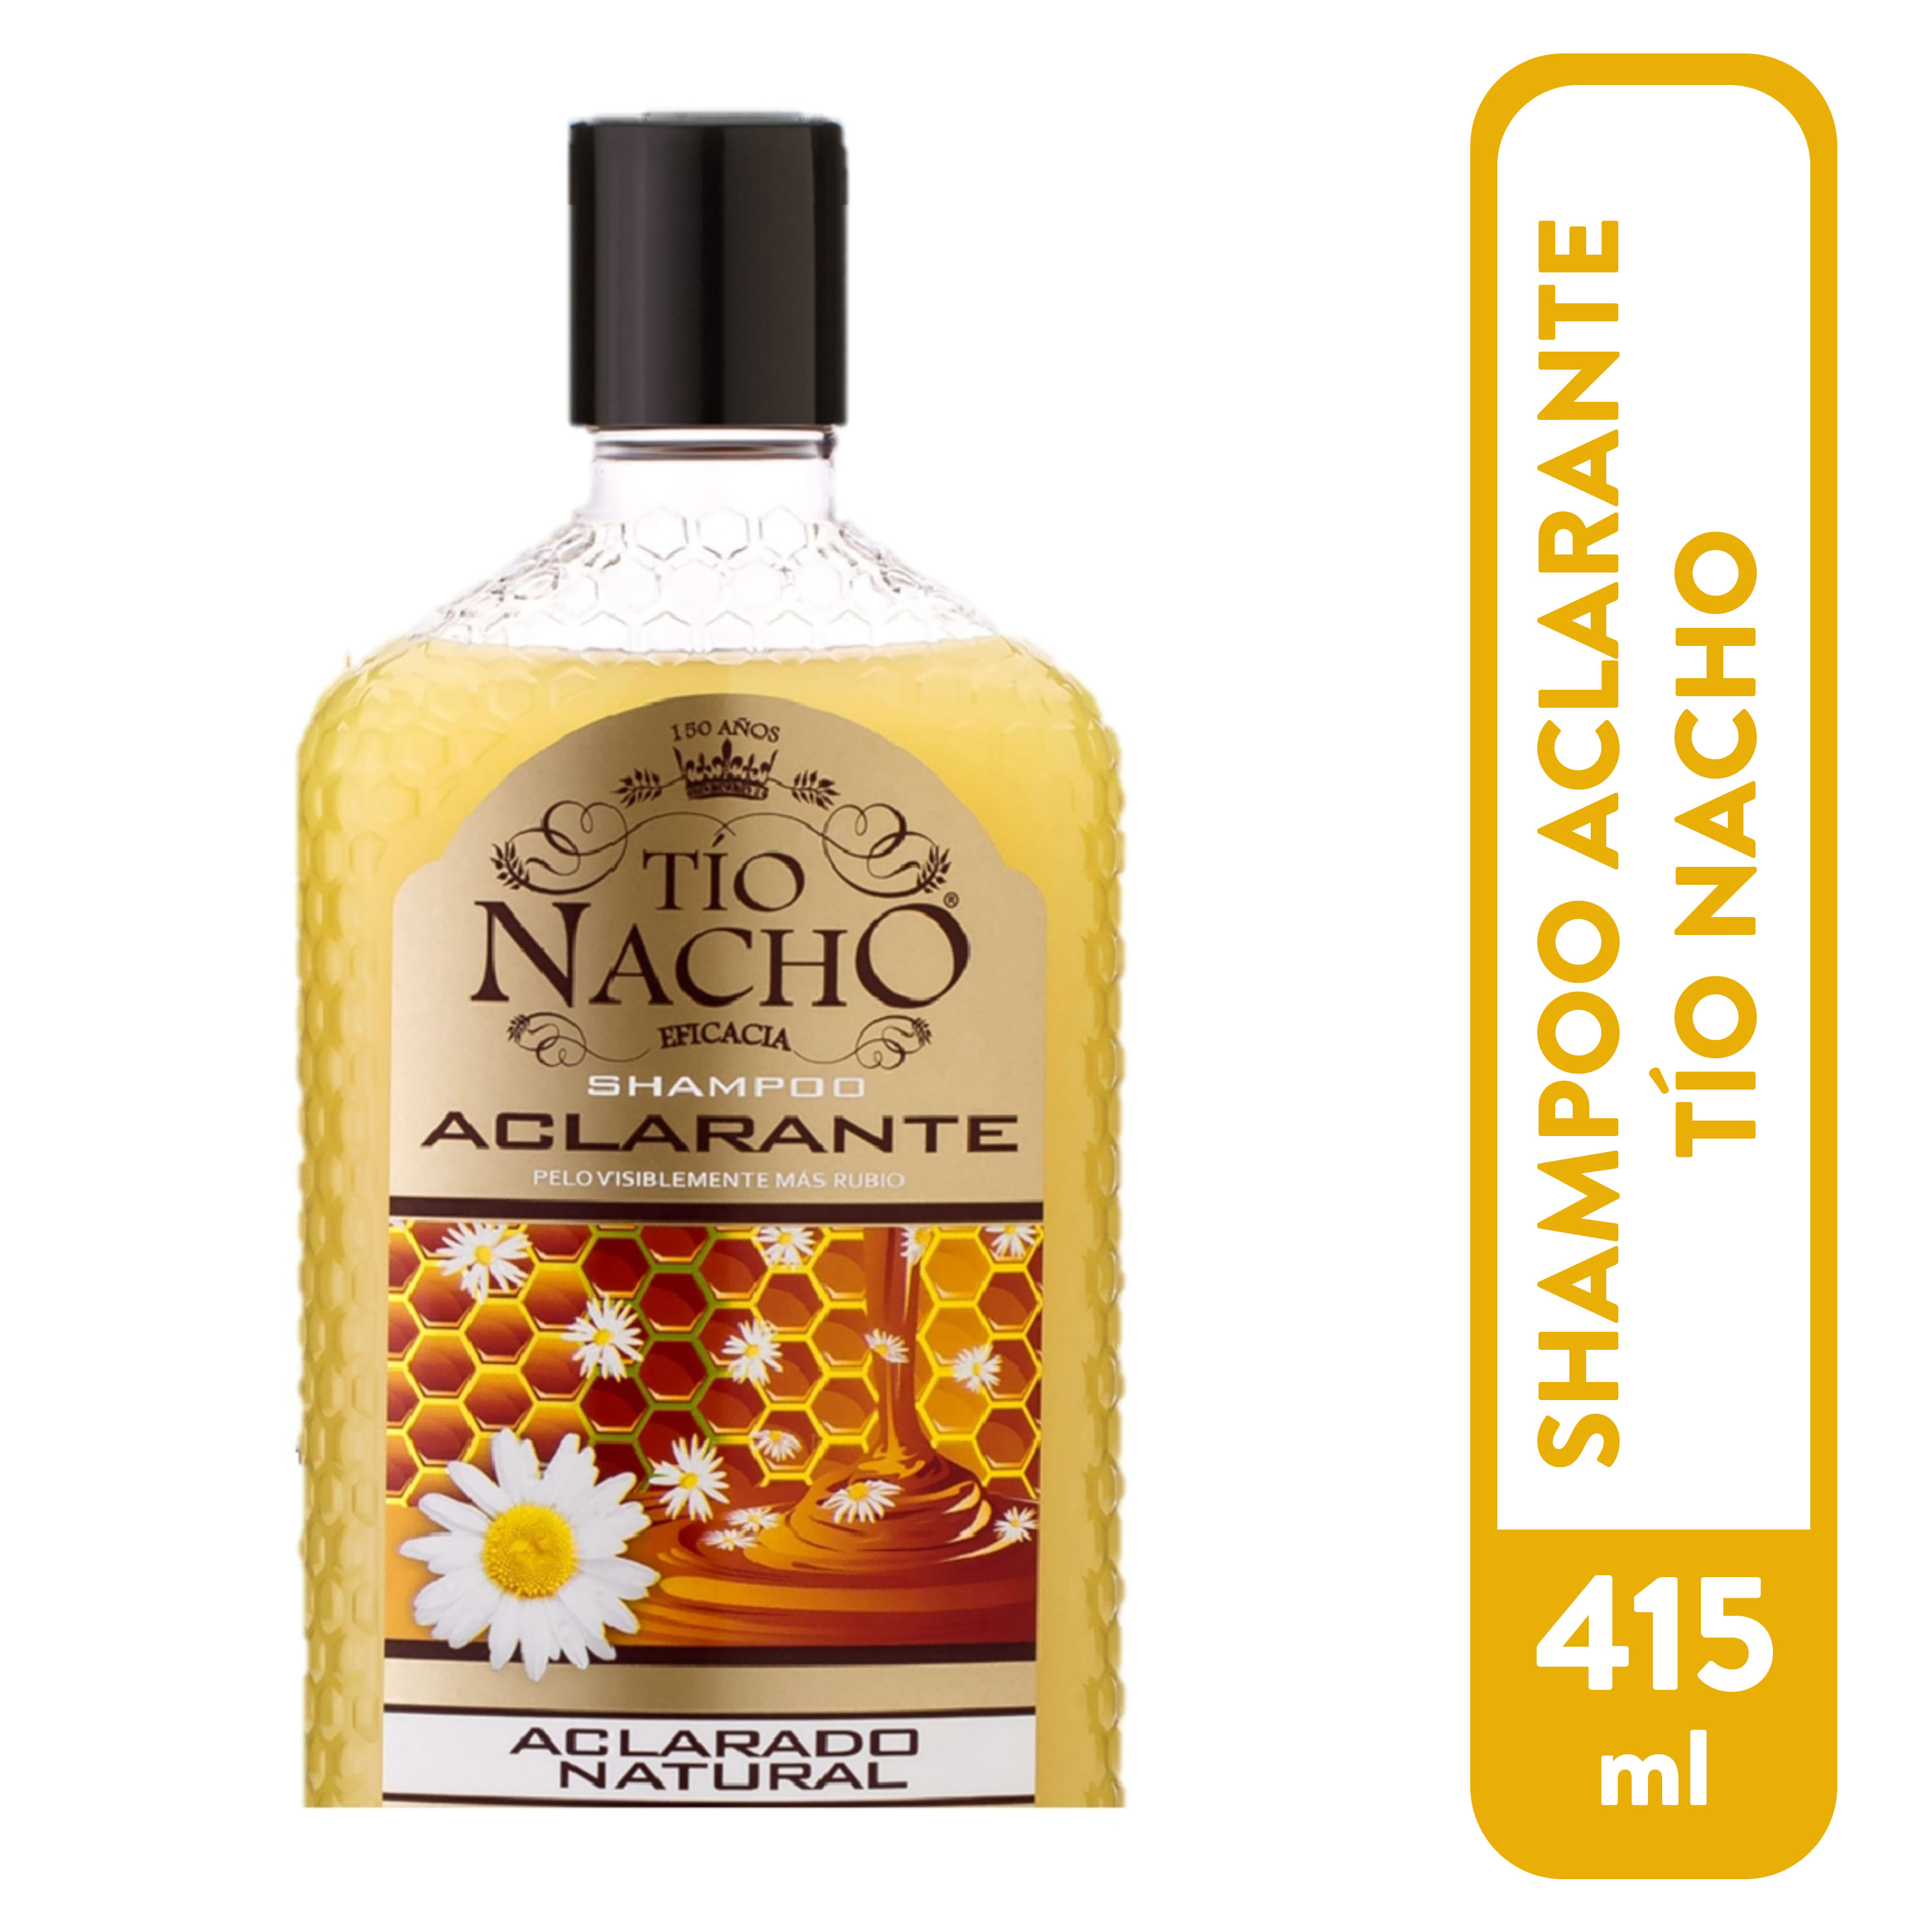 Shampoo-Tio-Nacho-Aclarante-Manzanilla-1000ml-1-3576